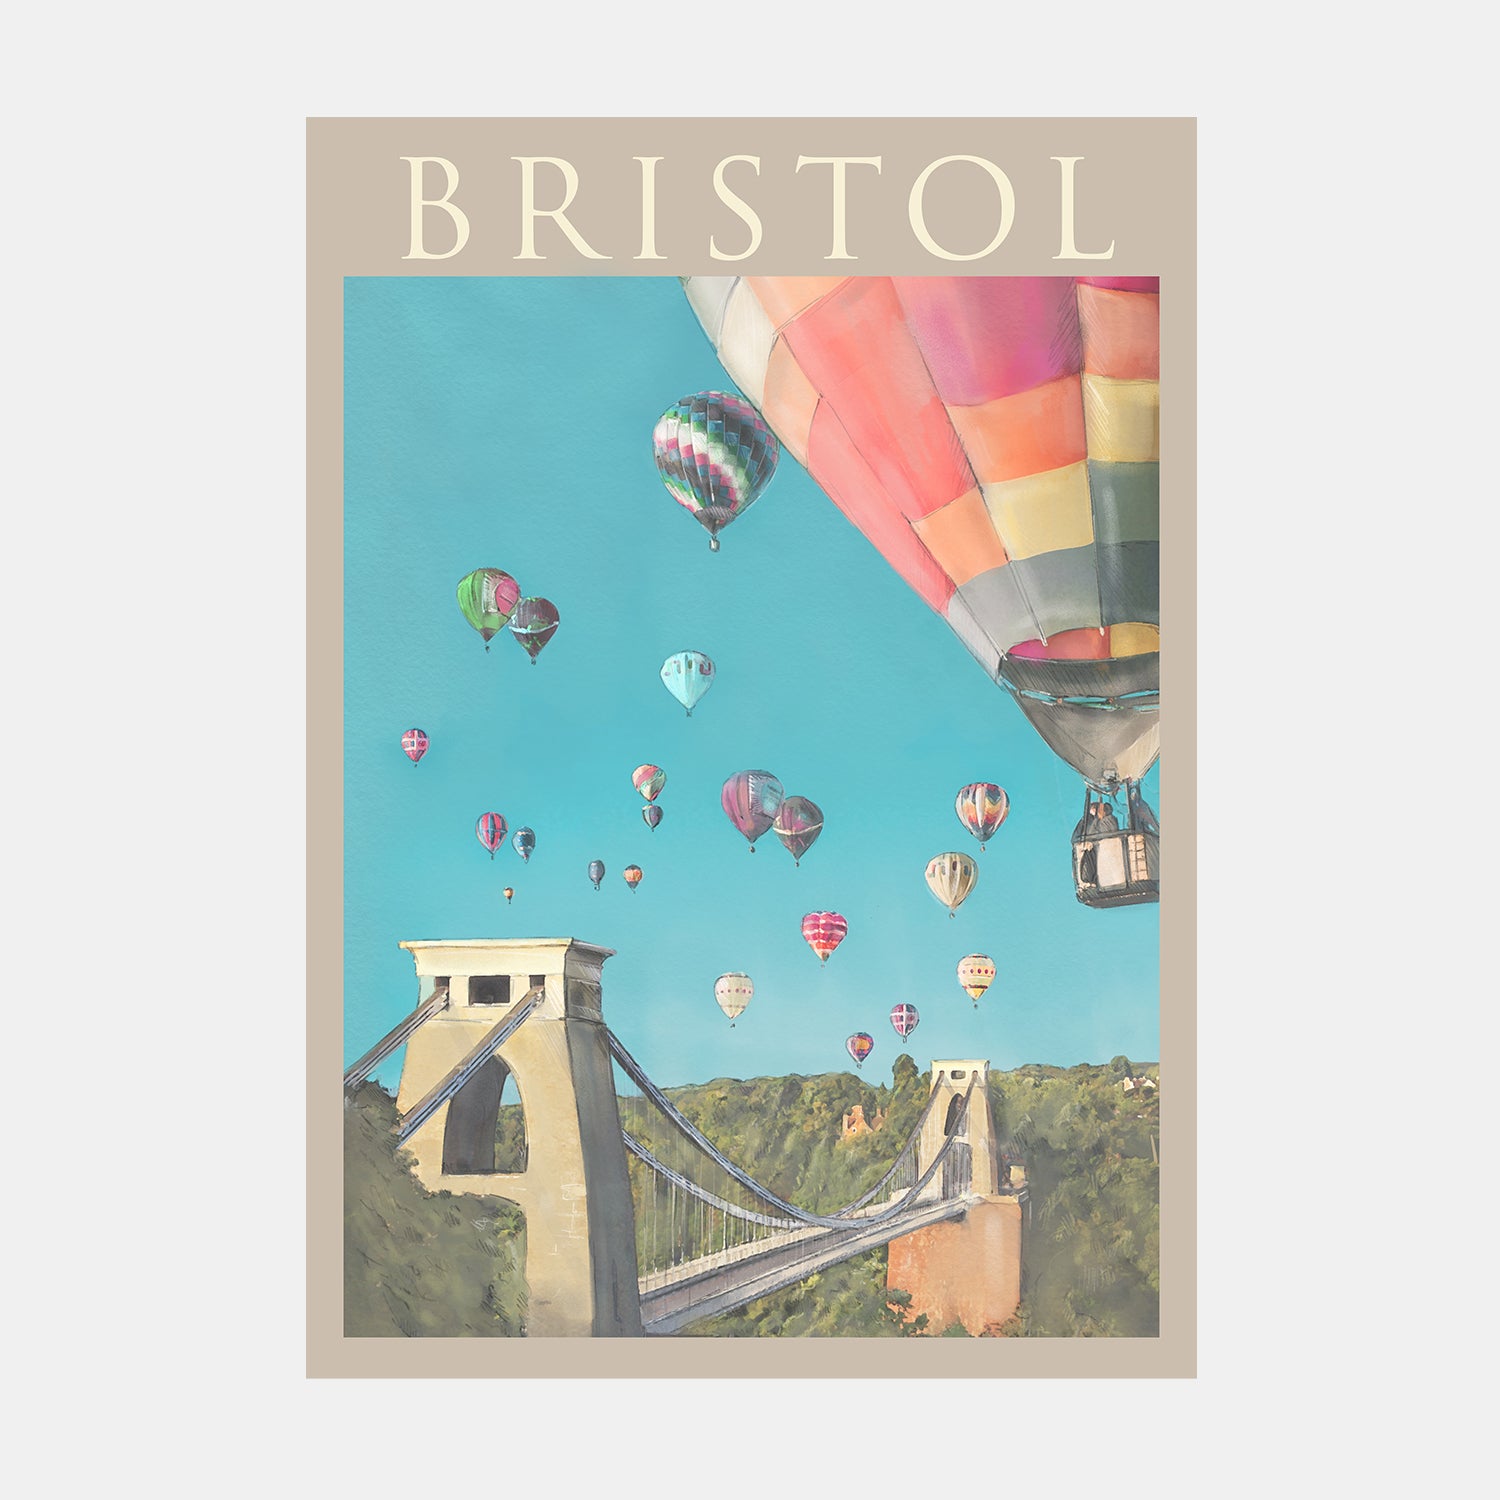 Bristol Balloon Fiesta Print